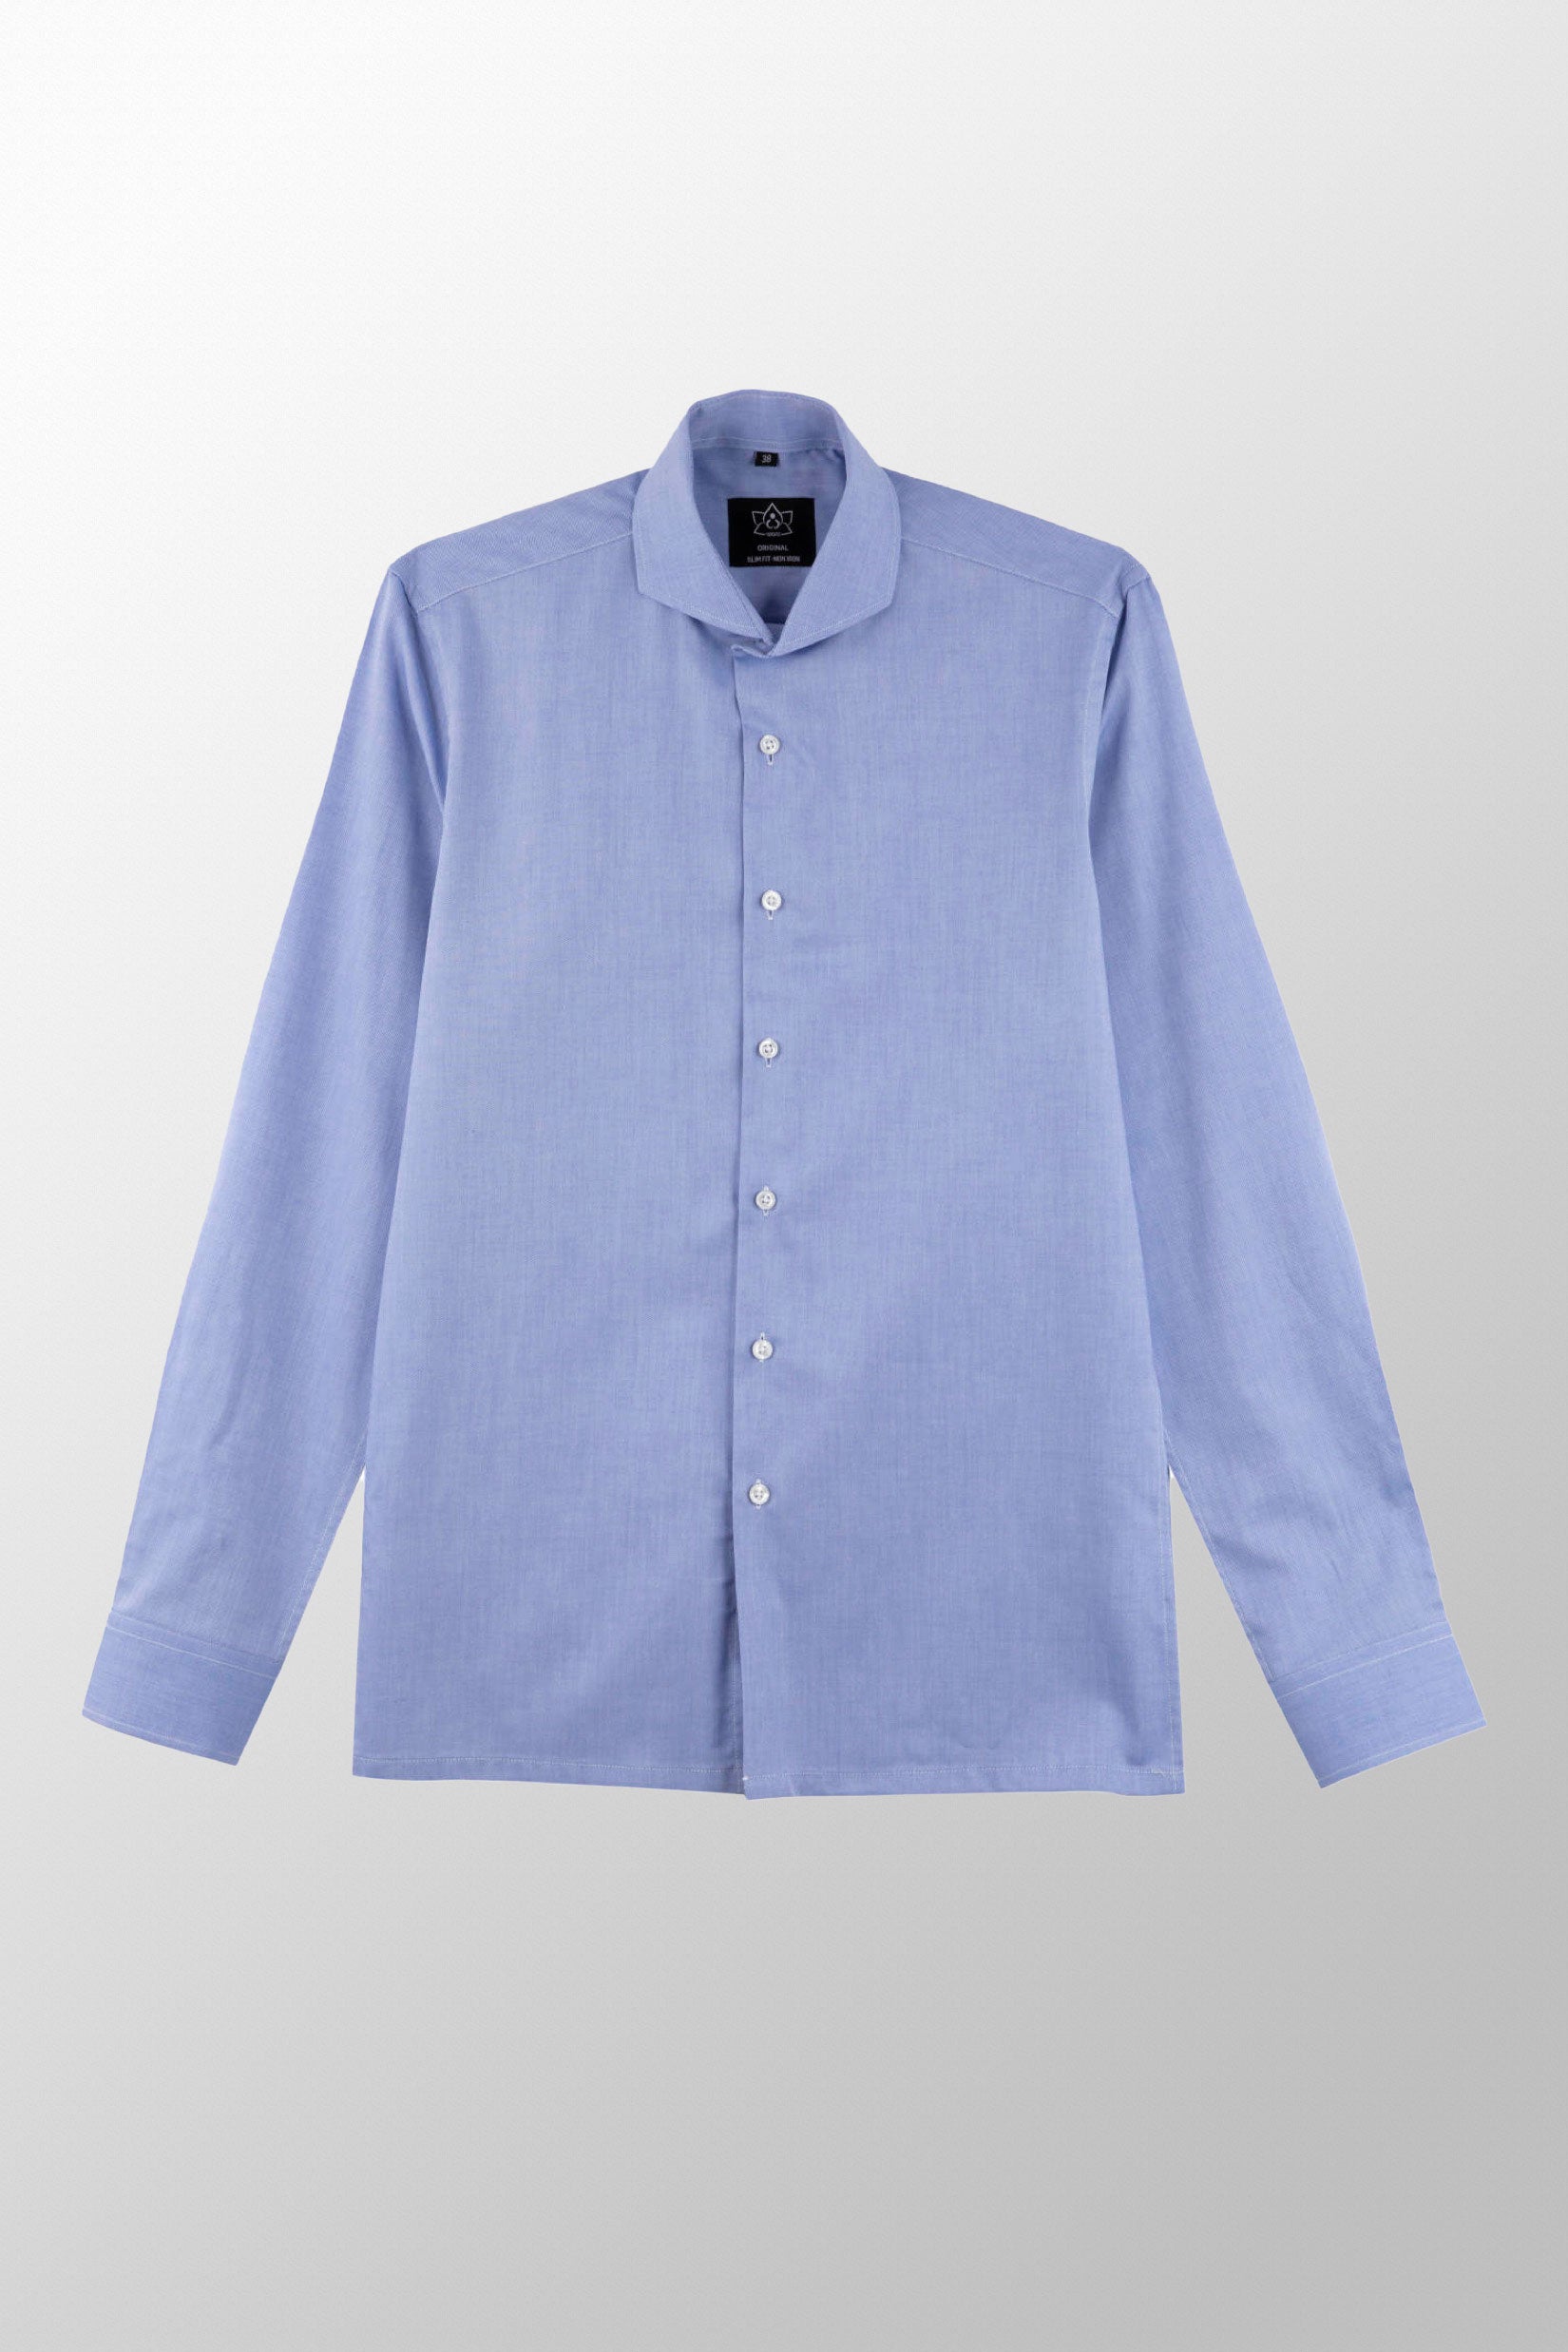 Strijkvrij Overhemd - Donkerblauw Royal Oxford - Overhemd - Vercate - Vercate - Overhemden - Strijkvrije overhemden - Heren - herenkleding